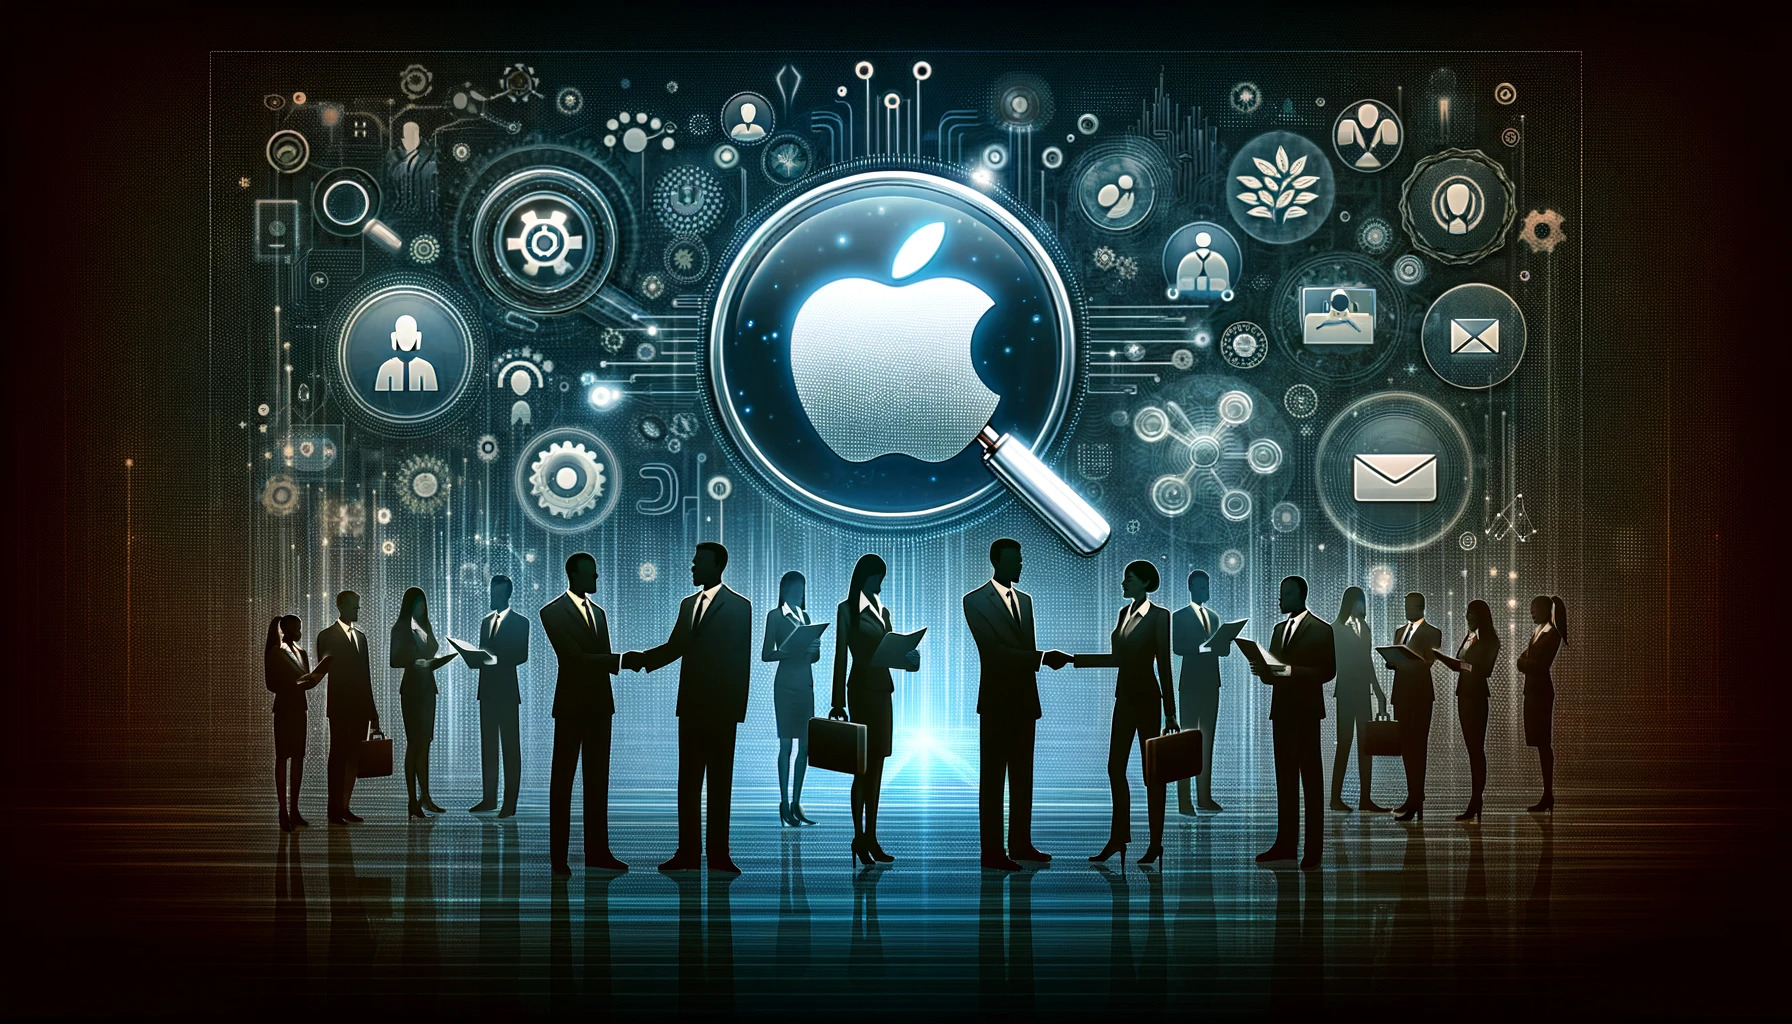 テクノロジー業界における Apple の採用傾向と戦略